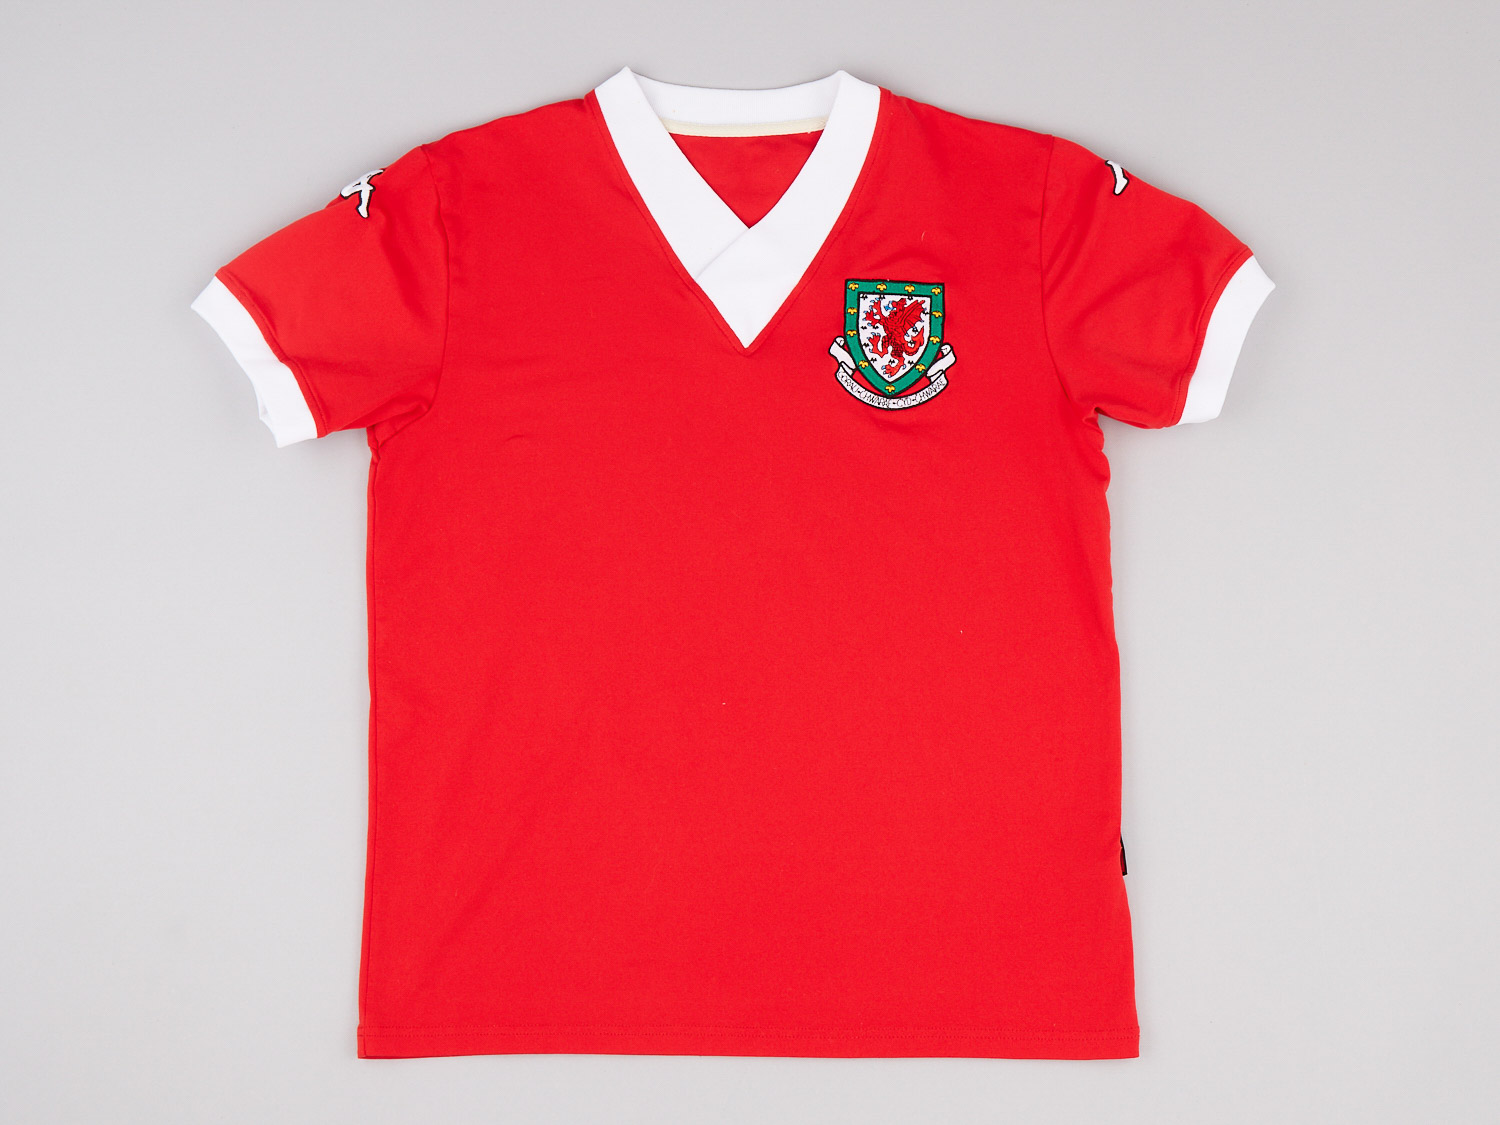 2006 Wales Home Shirt Women's ()